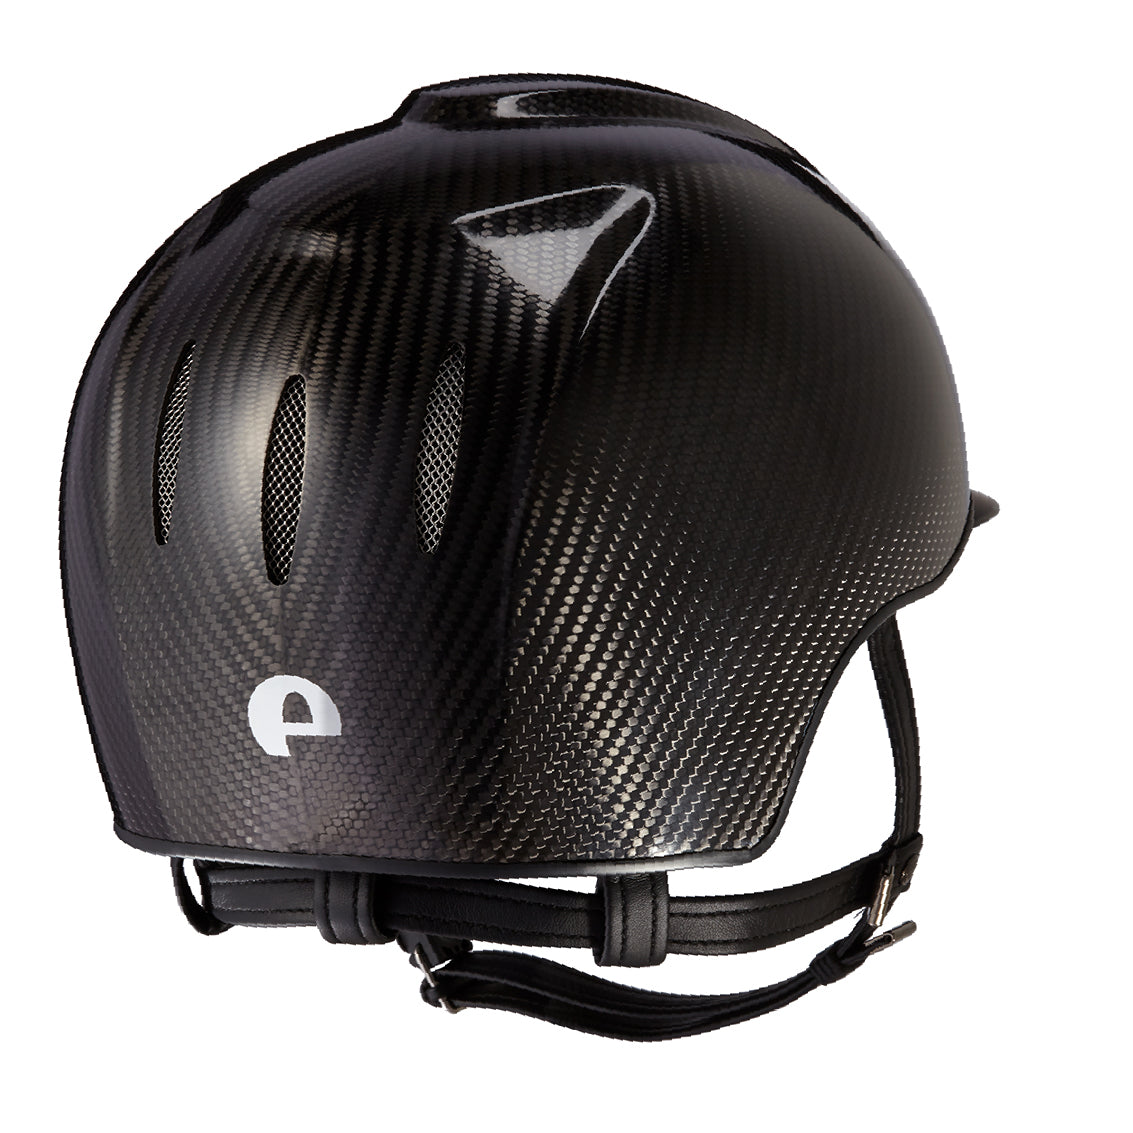 Casco in carbonio E-light Nero lucido con visiera nera opaca e griglia in acciaio | El gaucho sport